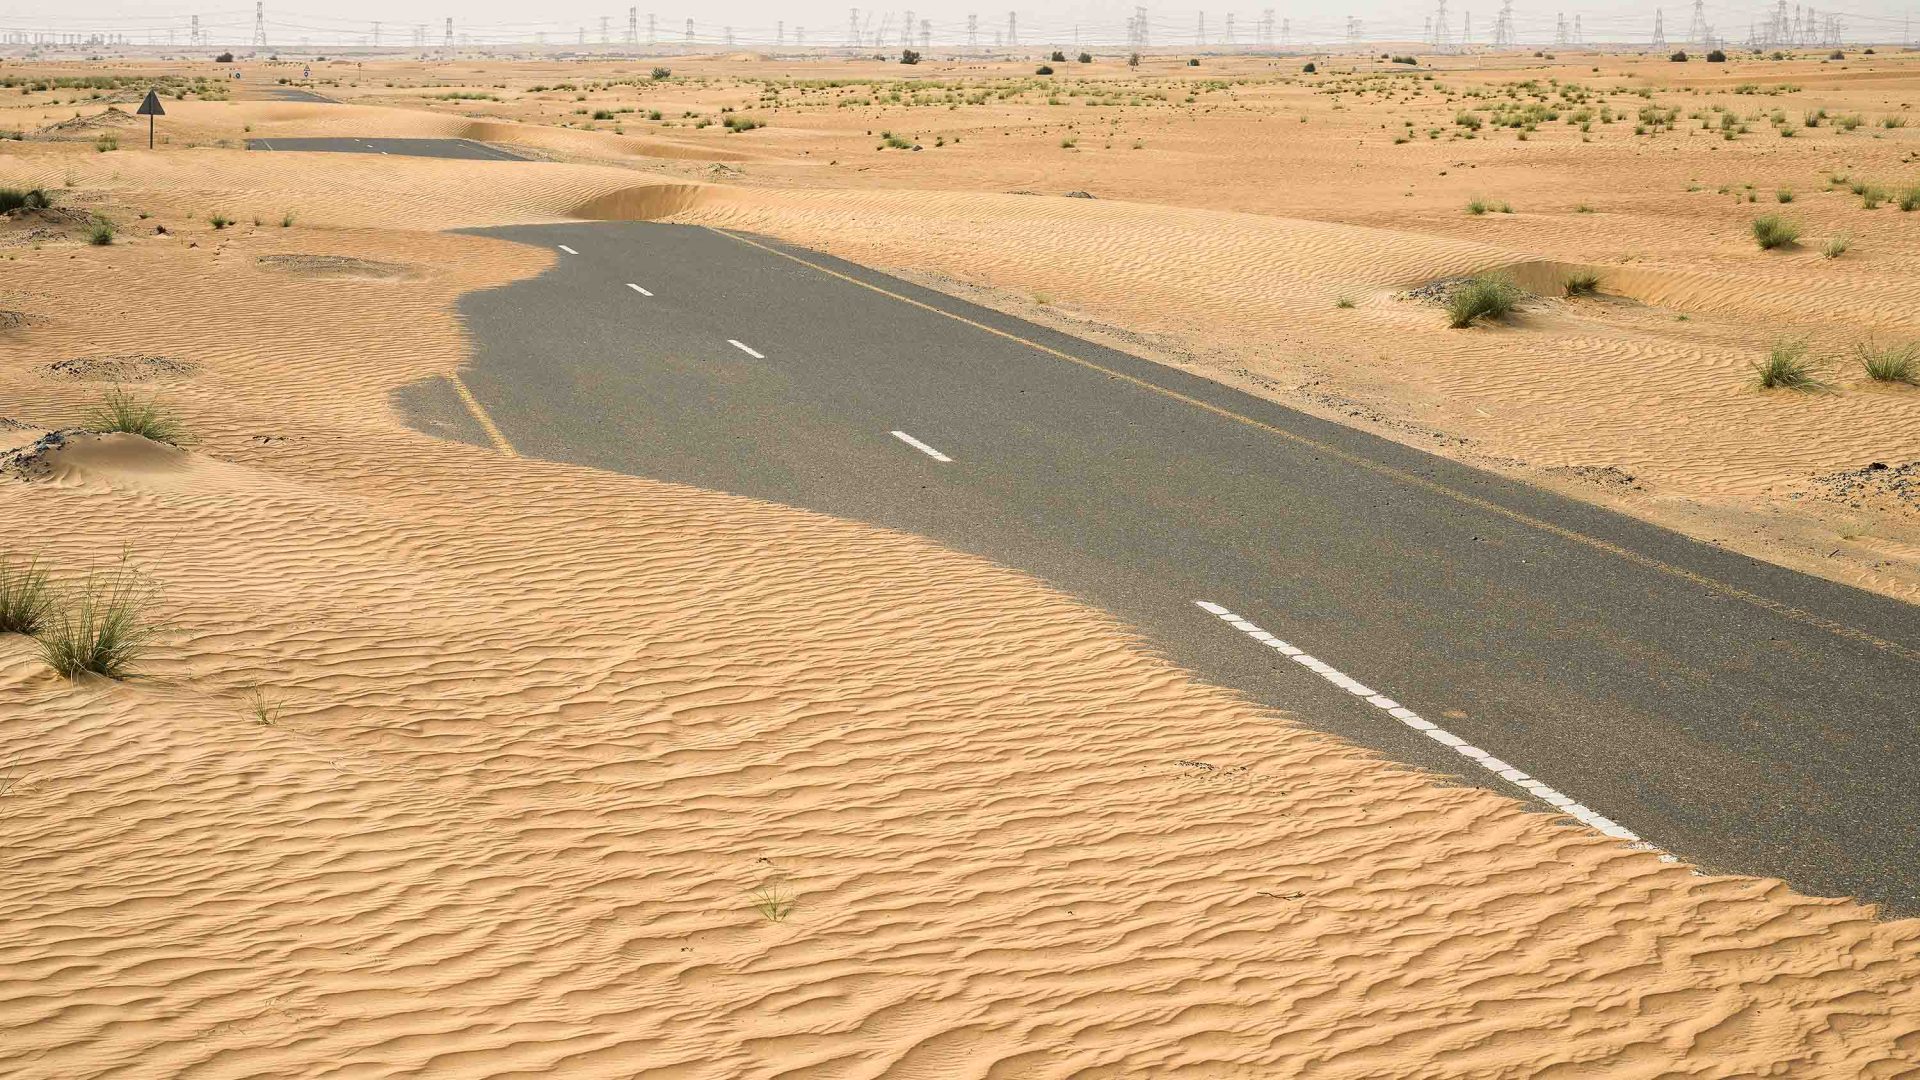 A road winds through the desert.